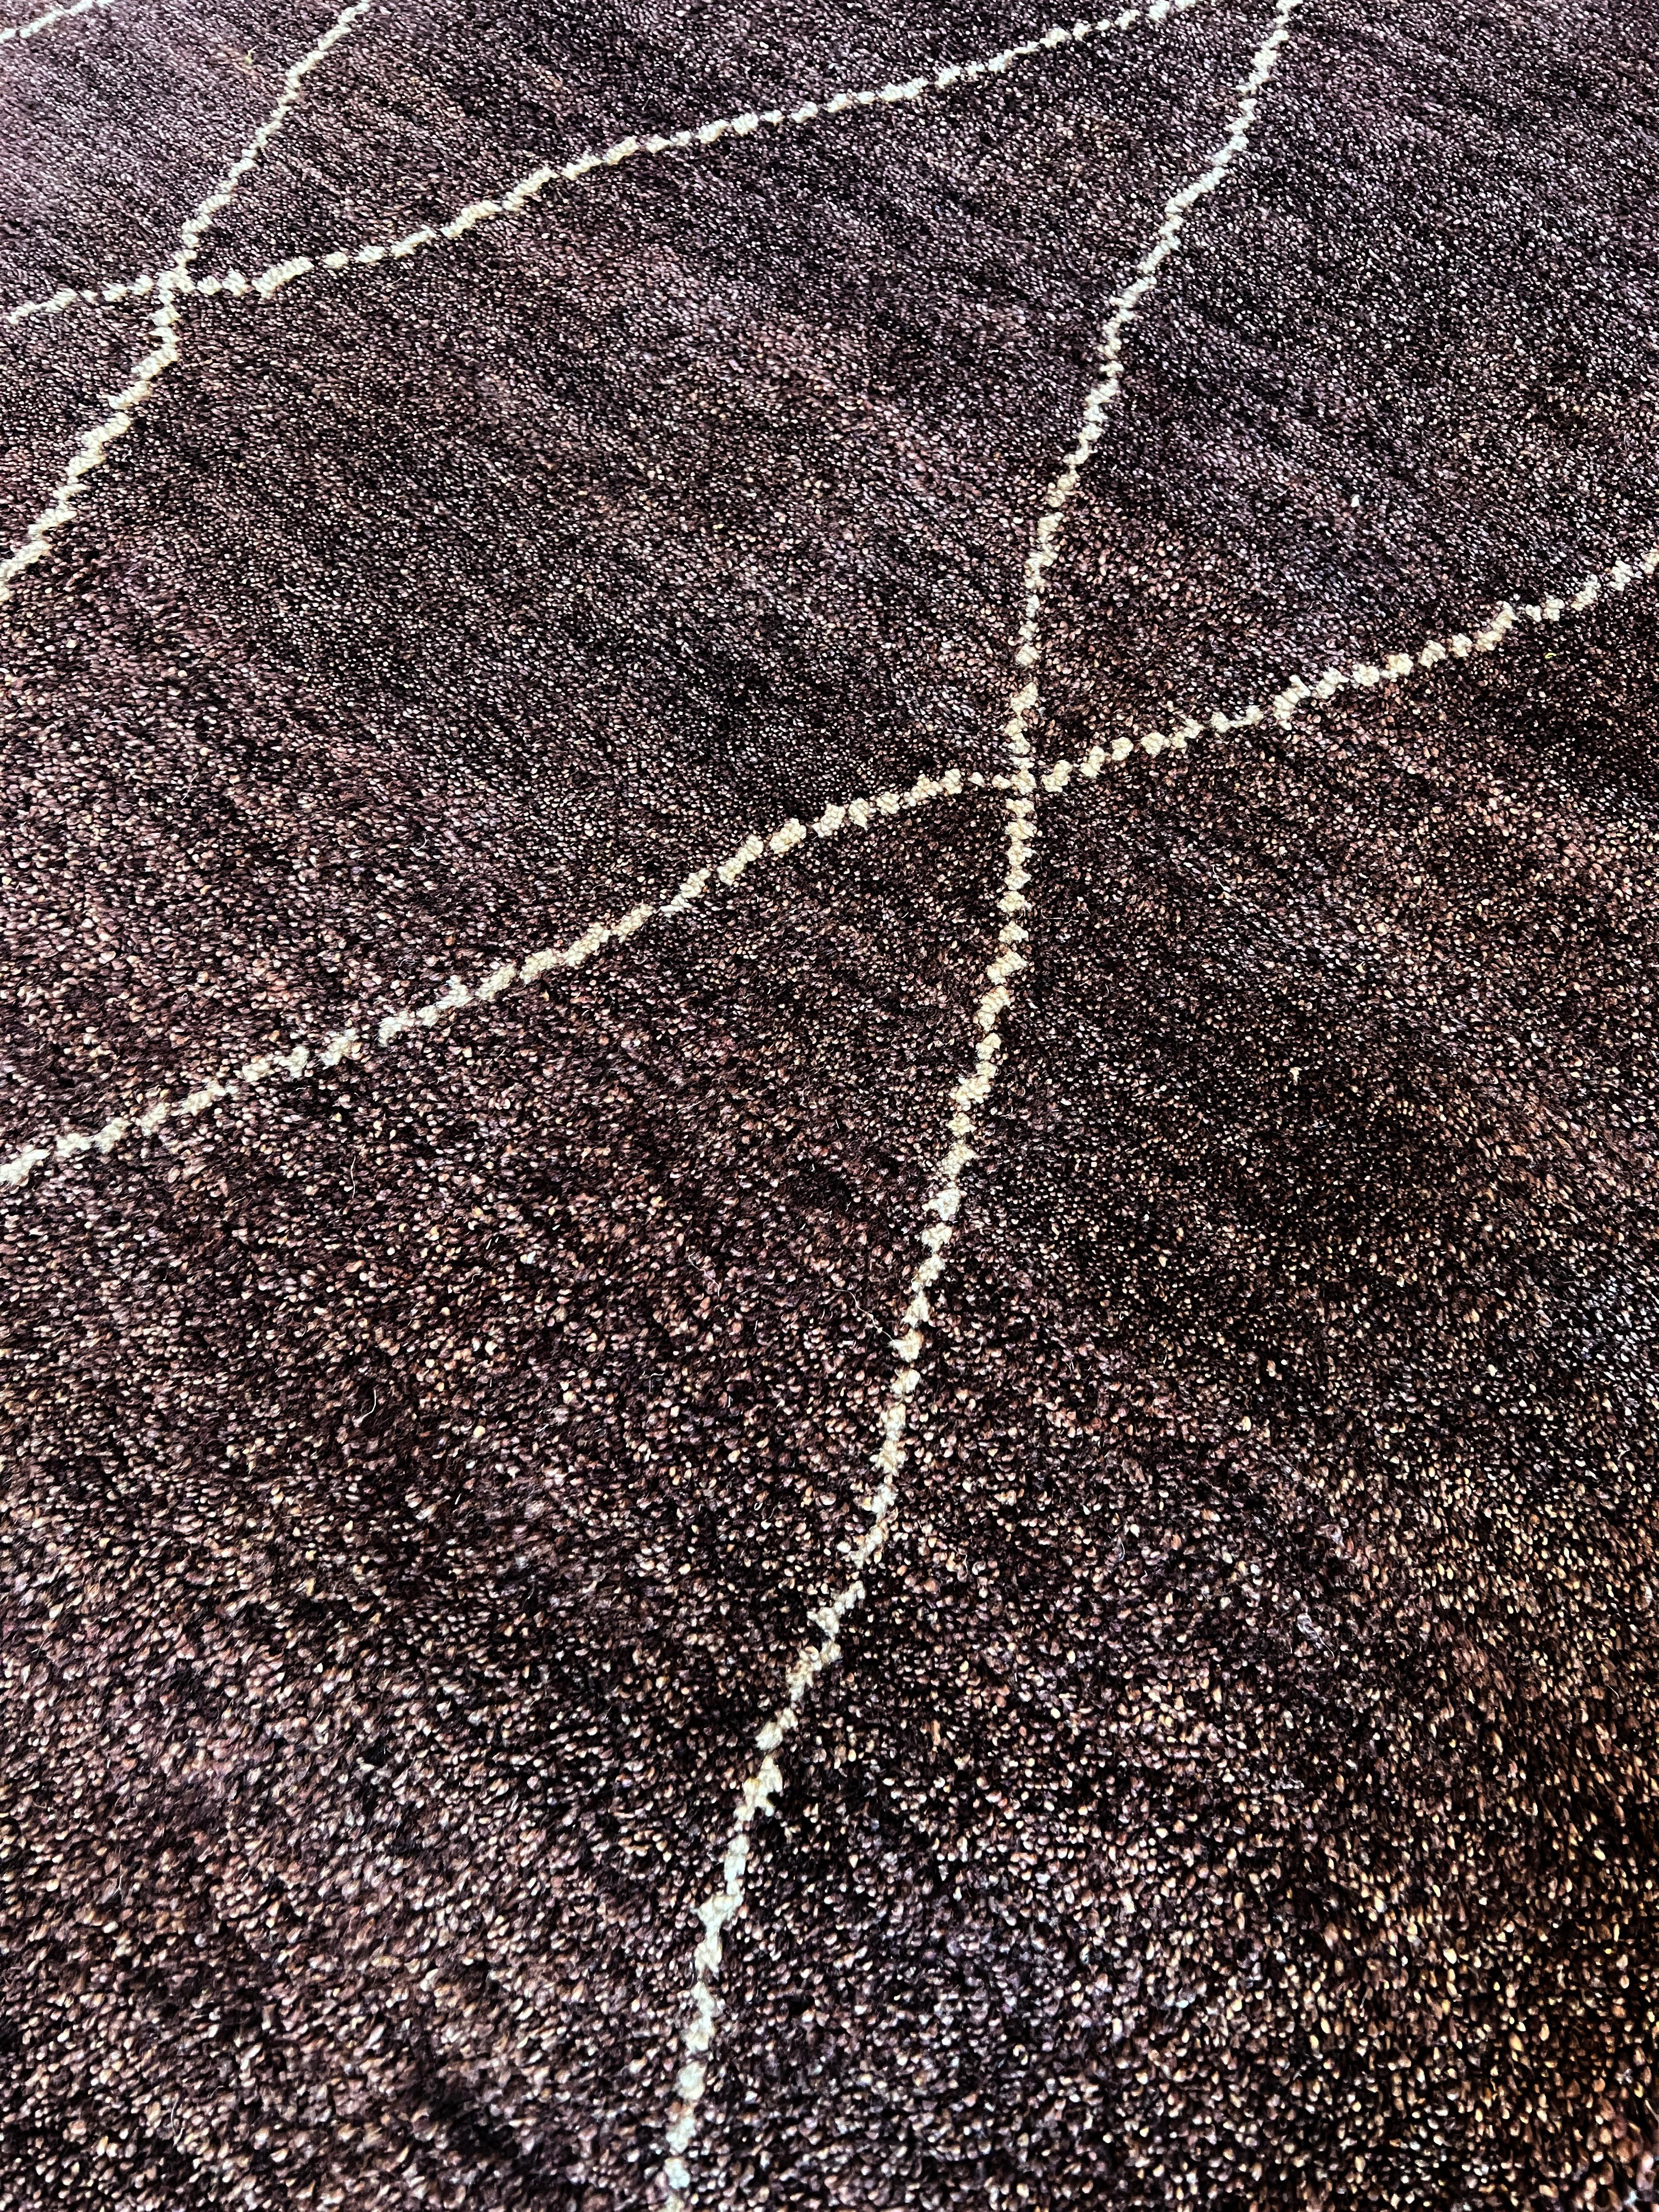 Bringen Sie einen Hauch von Eleganz in Ihr Zuhause mit unserem 9'x12' mauvebraunen marokkanisch inspirierten Teppich. Er wird in Indien aus reiner Wolle handgeknüpft und hat eine weiße Akzentlinie, die ihm einen klassischen Touch verleiht. Erleben